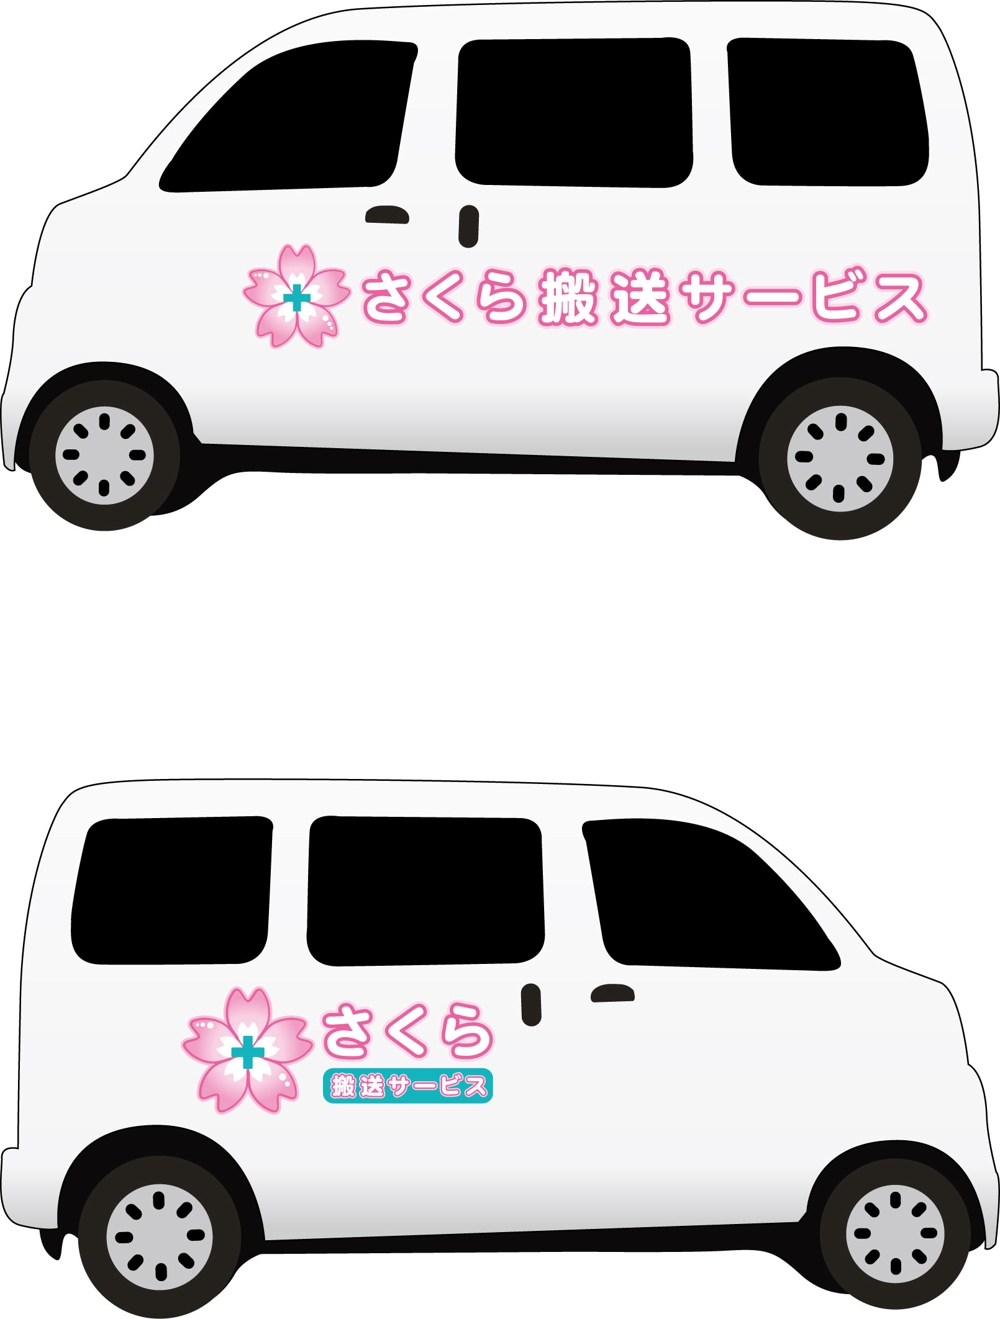 介護タクシーと民間救急の事業のロゴ